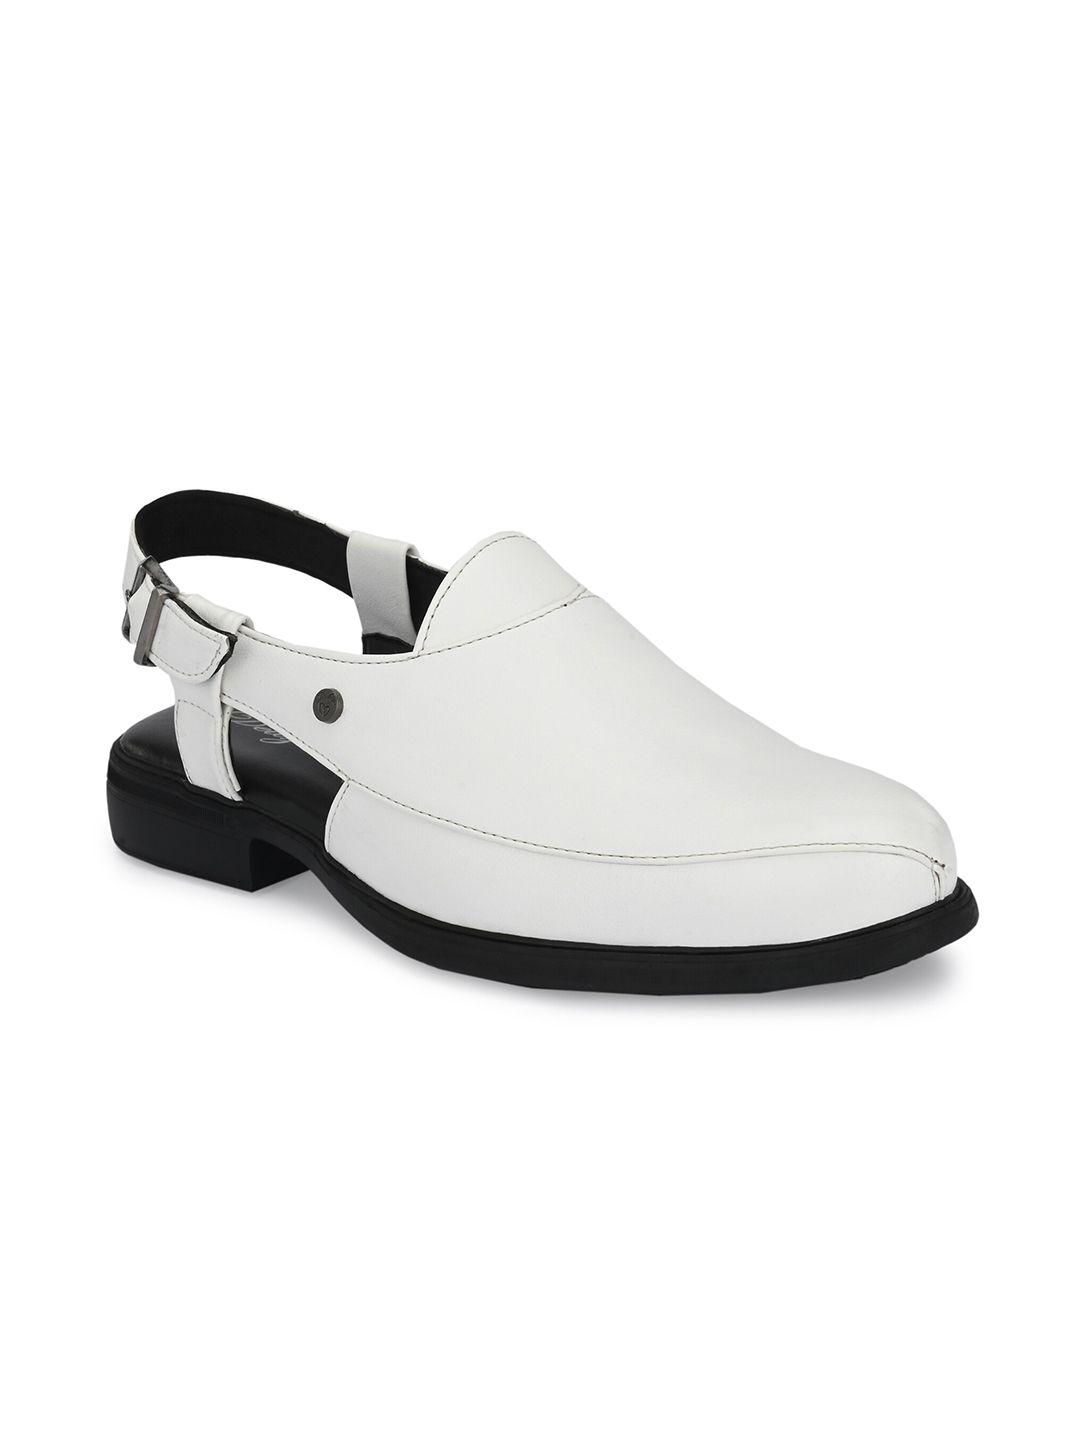 delize men white shoe-style roman sandals